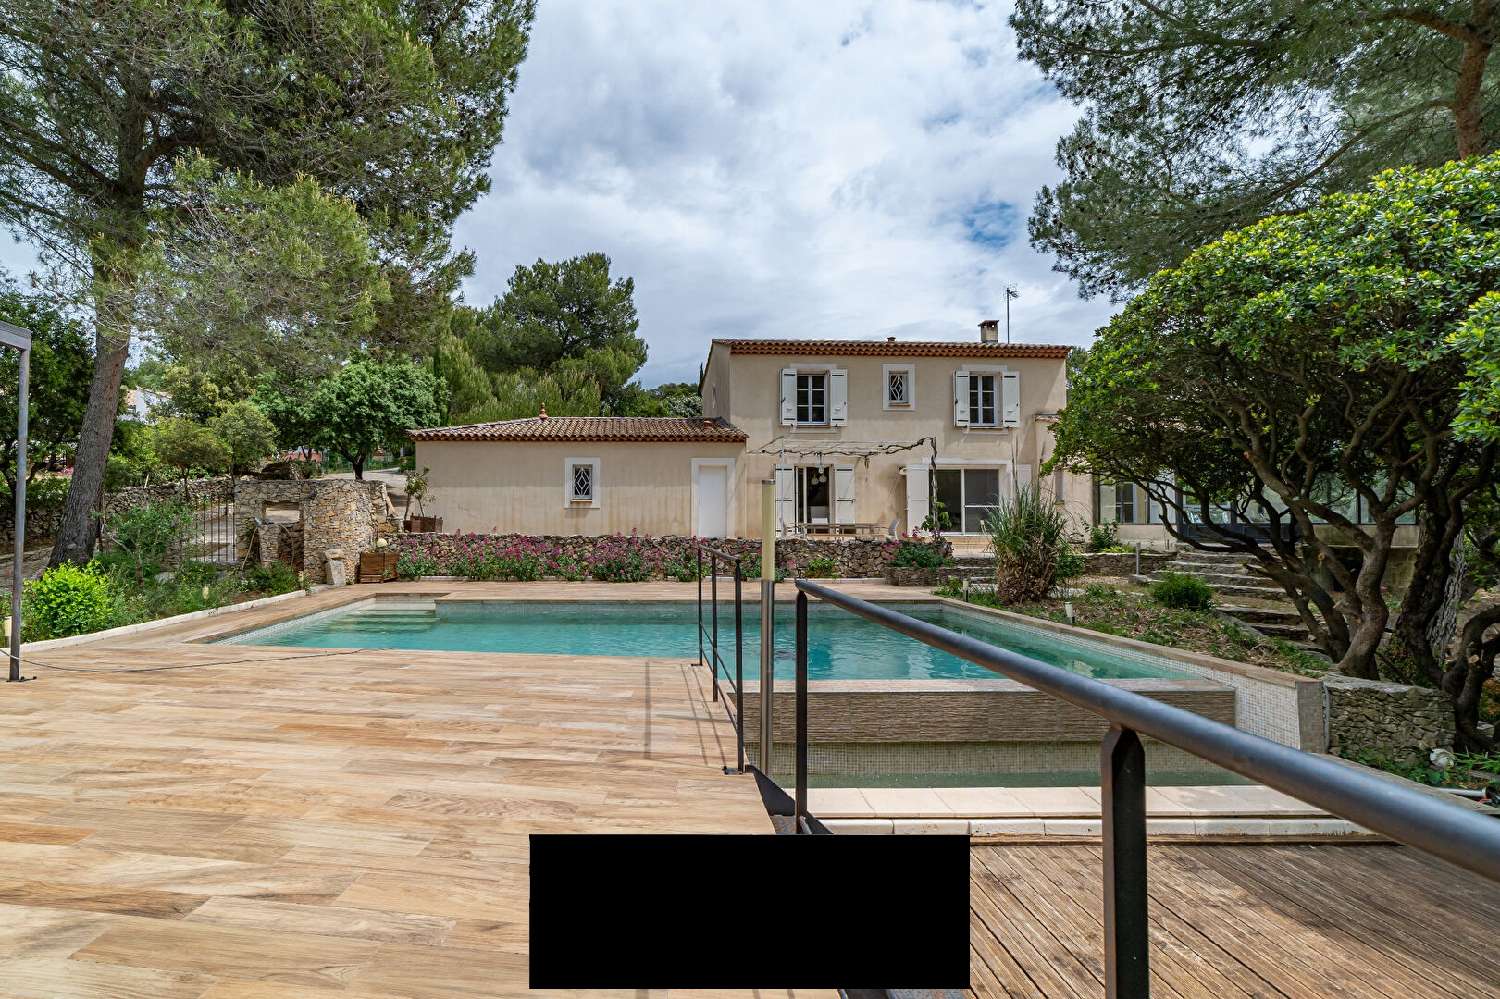  à vendre villa Nîmes Gard 2